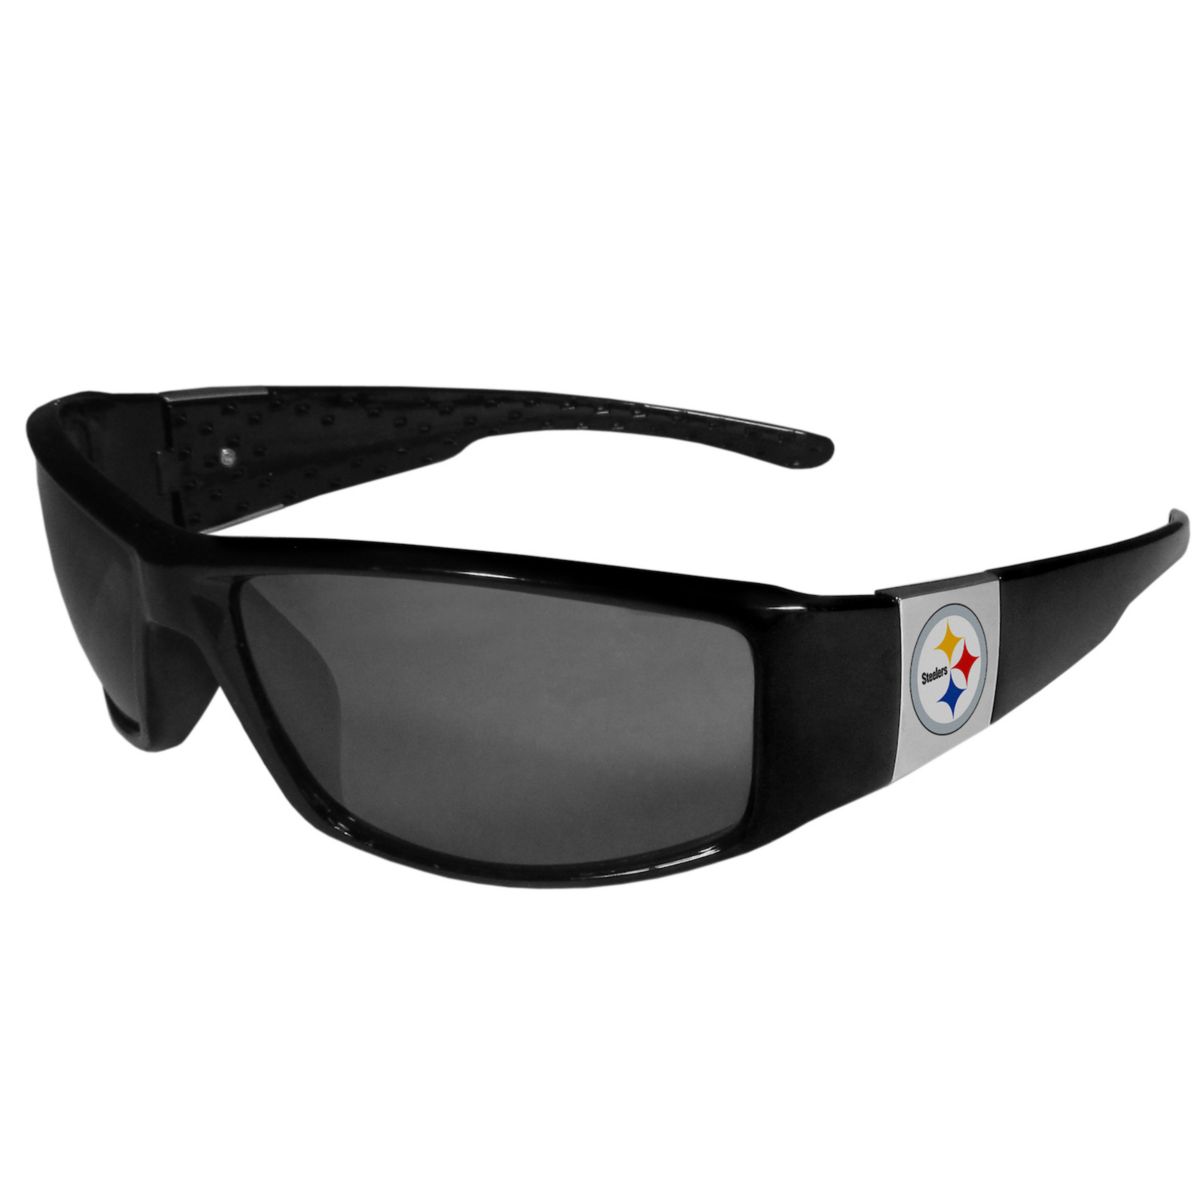 Мужские солнцезащитные очки Pittsburgh Steelers с хромированной обмоткой Unbranded